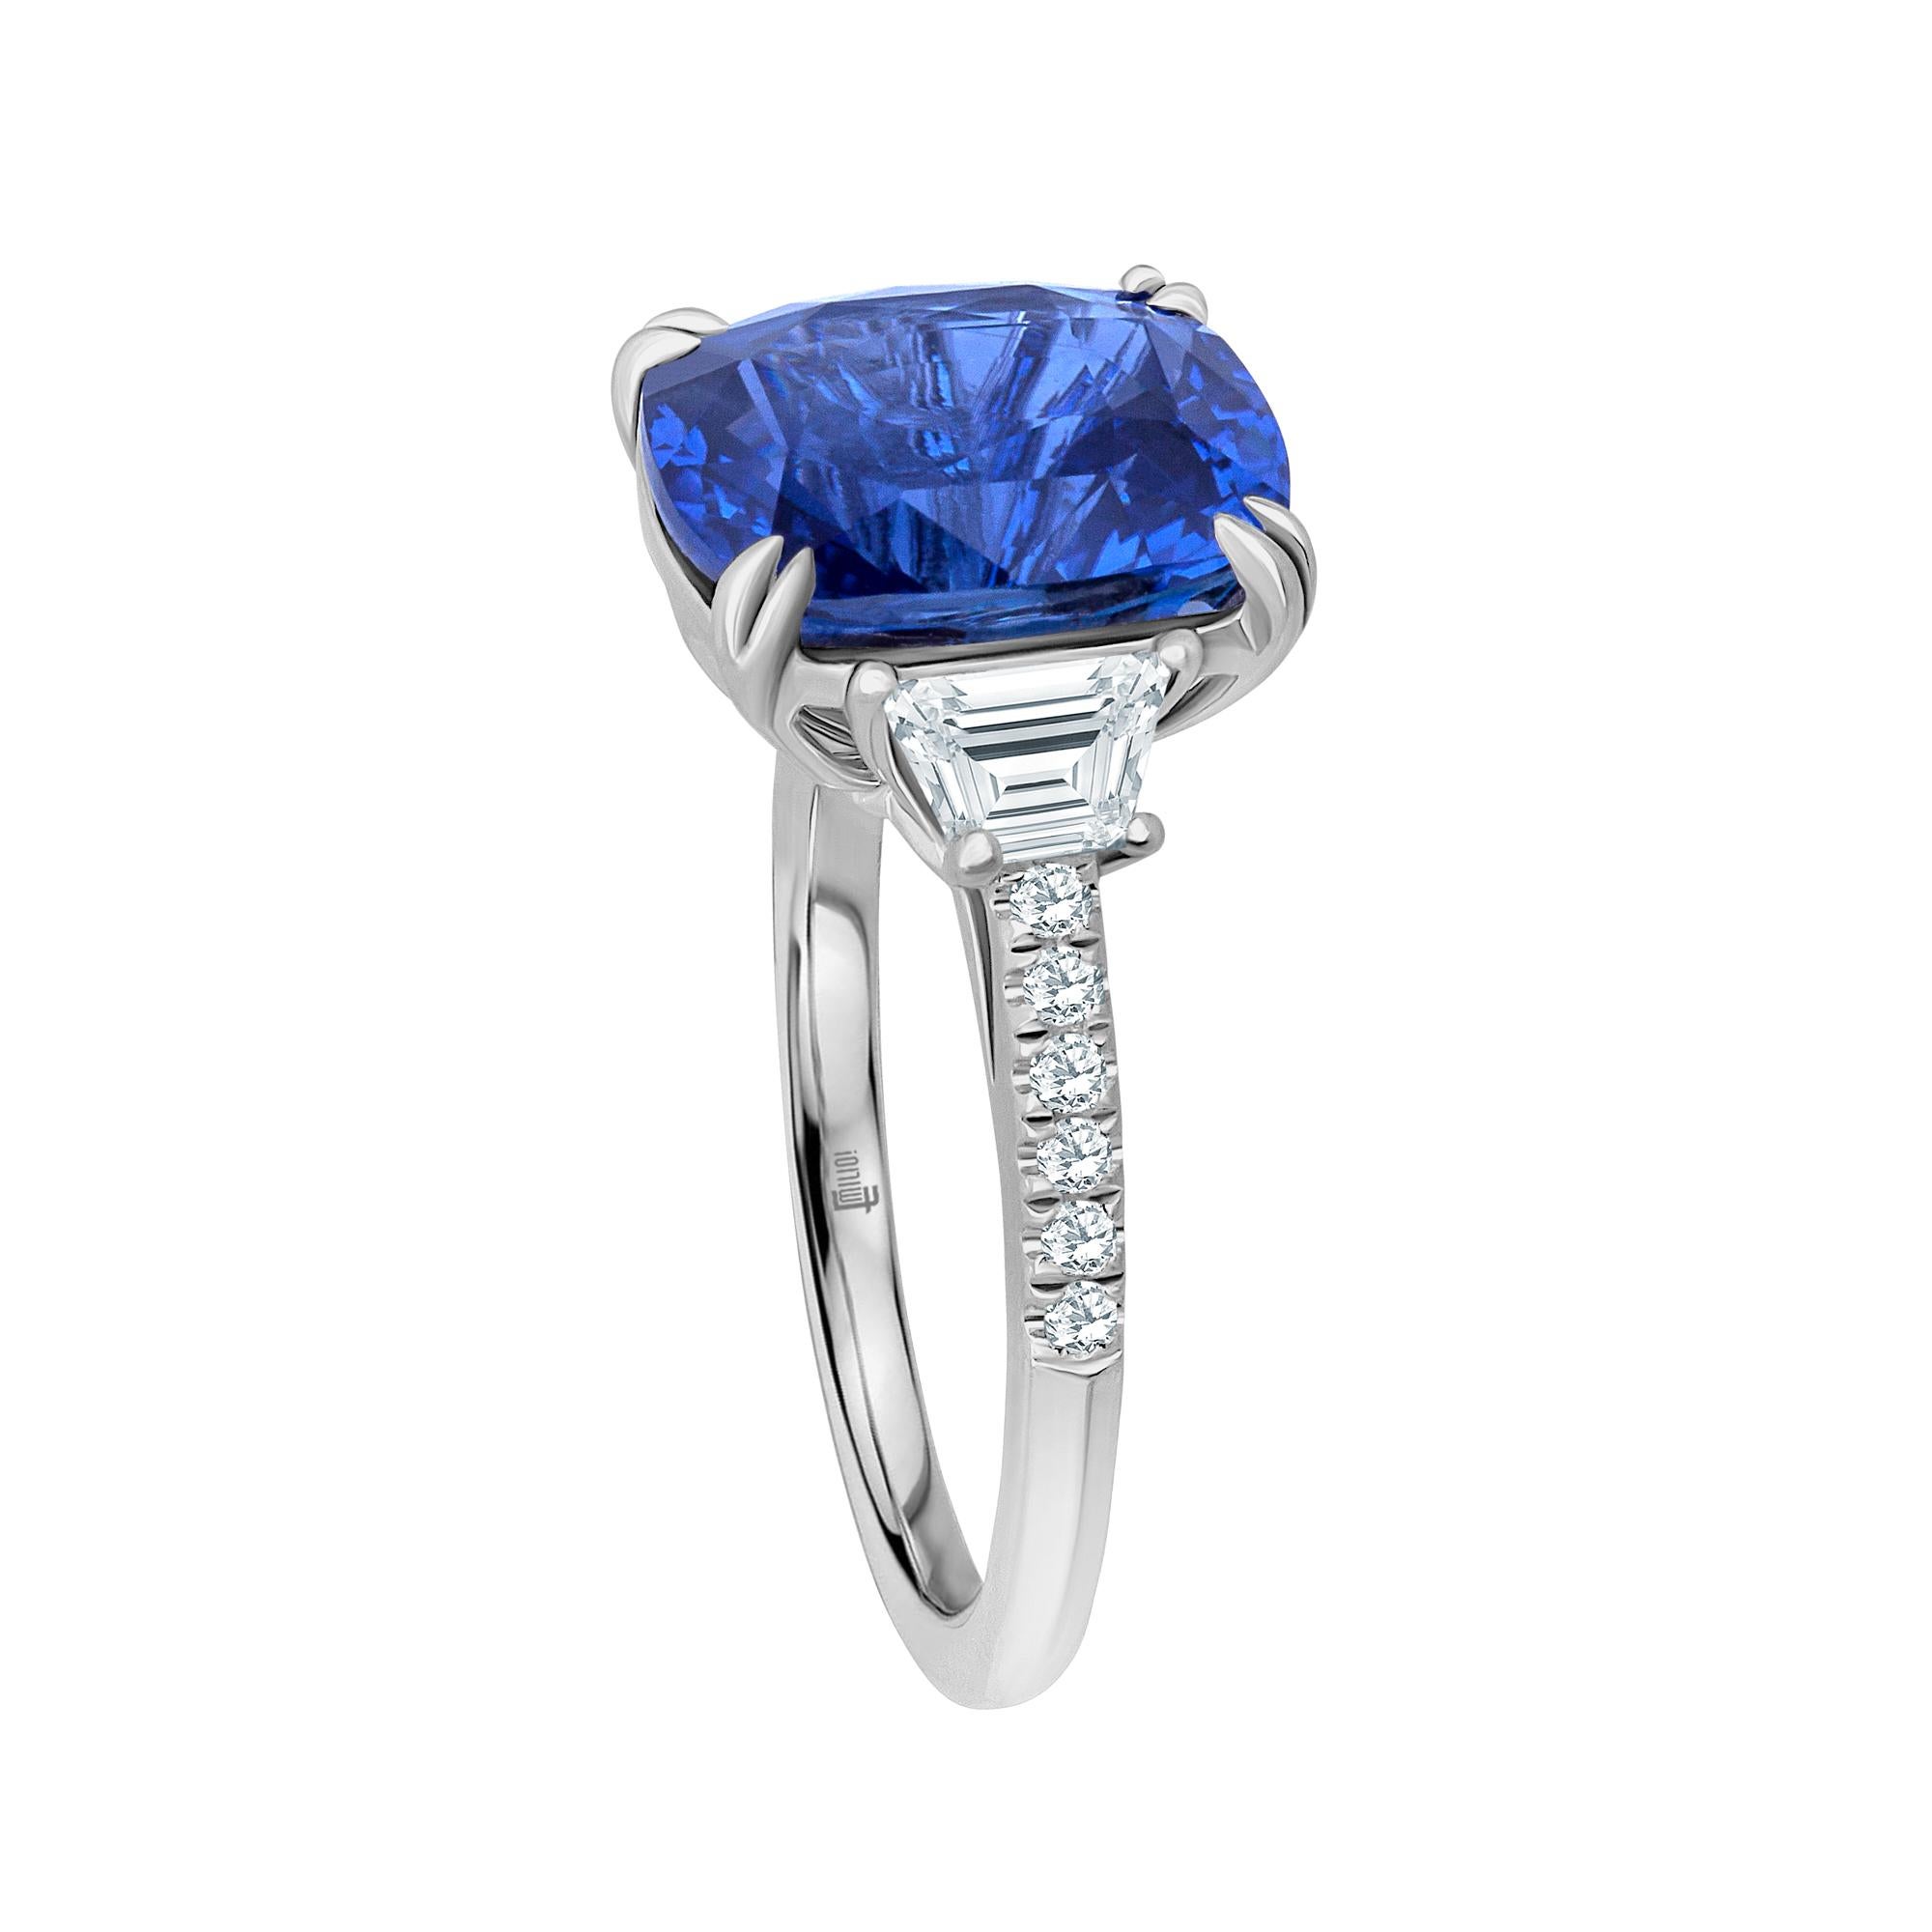 Emilio Jewelry Certified Cushion Sapphire Diamond Platinum Ring 
Dieser erstaunliche Ring ist einzigartig und gut durchdacht, bevor Emilio ihn entworfen hat! Die meisten Frauen wünschen sich heute einen Ring, der auffällig ist, aber dennoch so